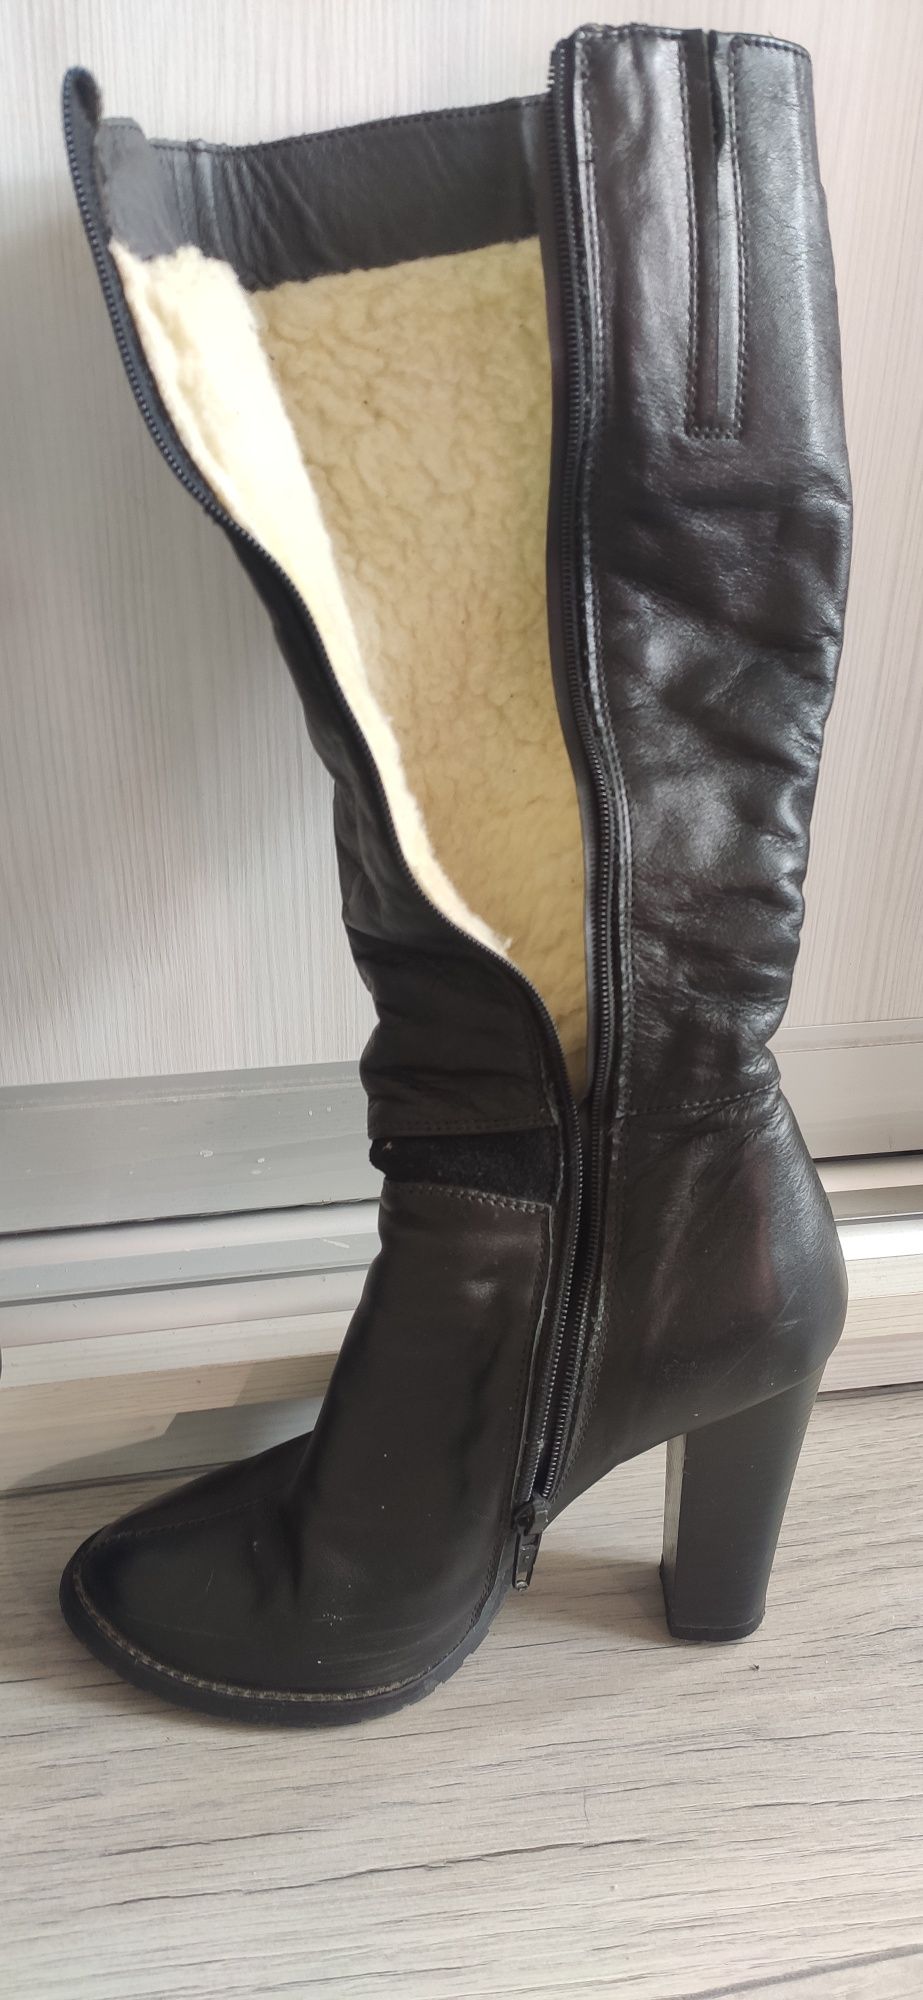 Шкіряні зимові чоботи (сапожки) жіночі 36 розмір